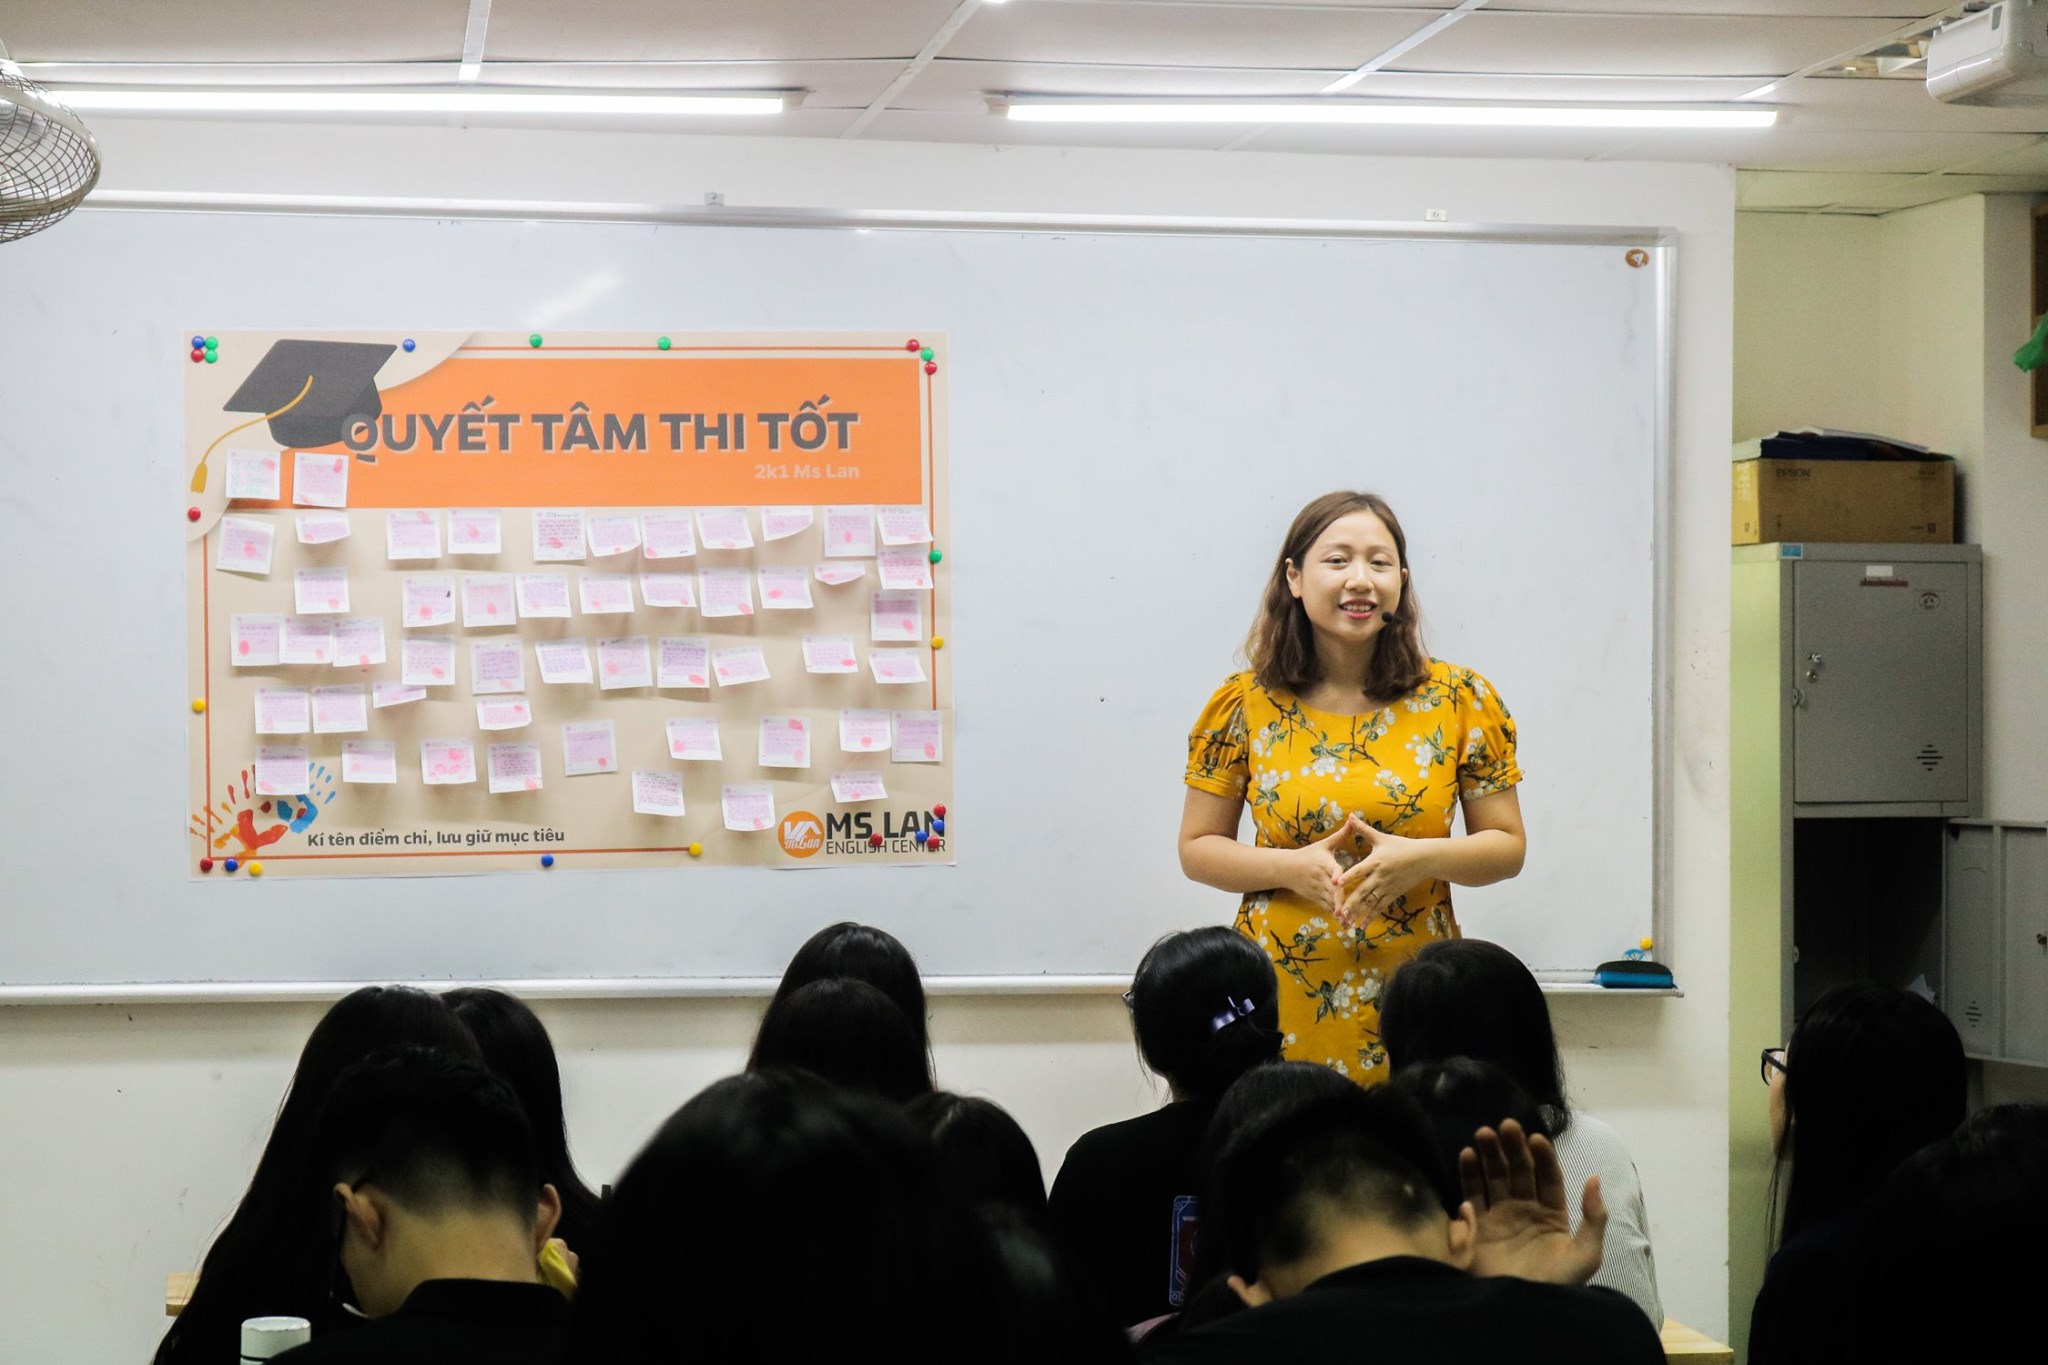 Đi tìm giáo viên tiếng Anh nức tiếng trong lòng học trò Hà thành, nhiều người đã mở trung tâm lớn đào tạo hàng ngàn học sinh mỗi năm - Ảnh 7.